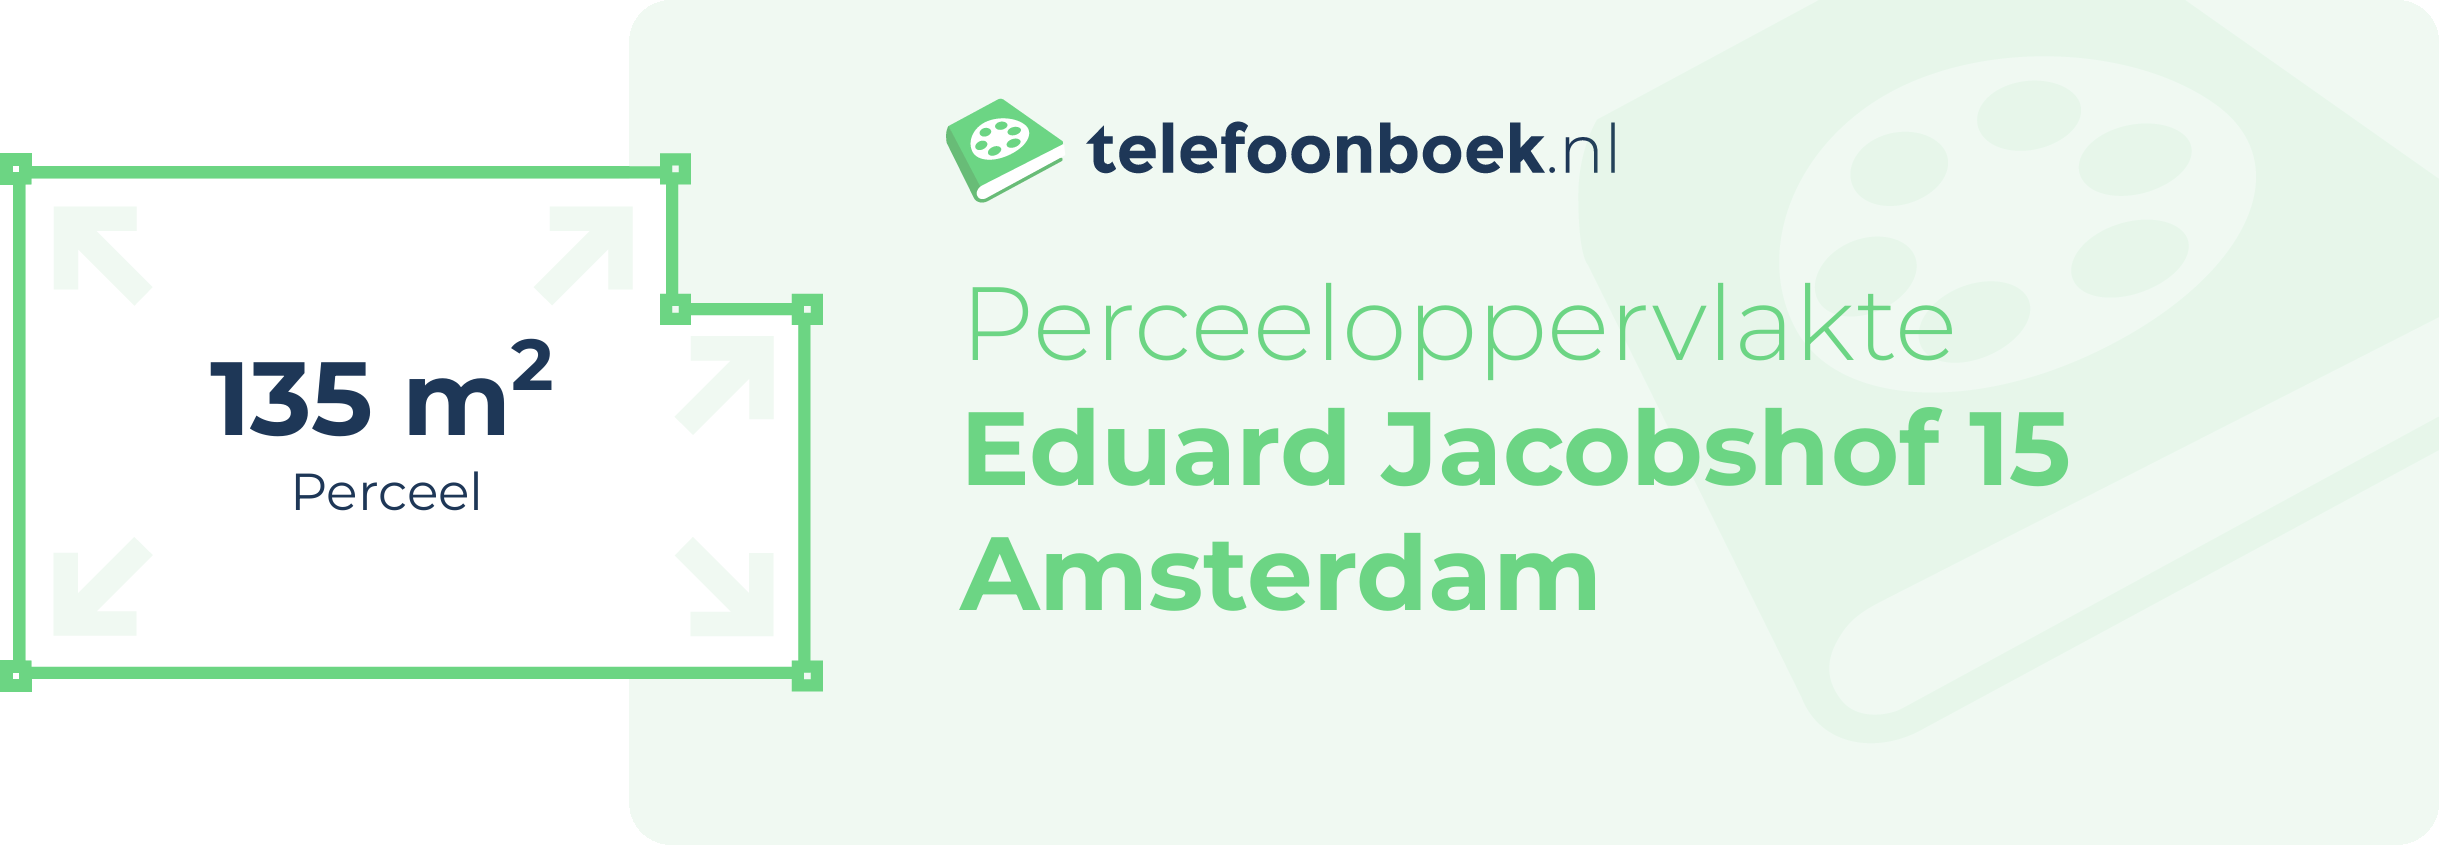 Perceeloppervlakte Eduard Jacobshof 15 Amsterdam